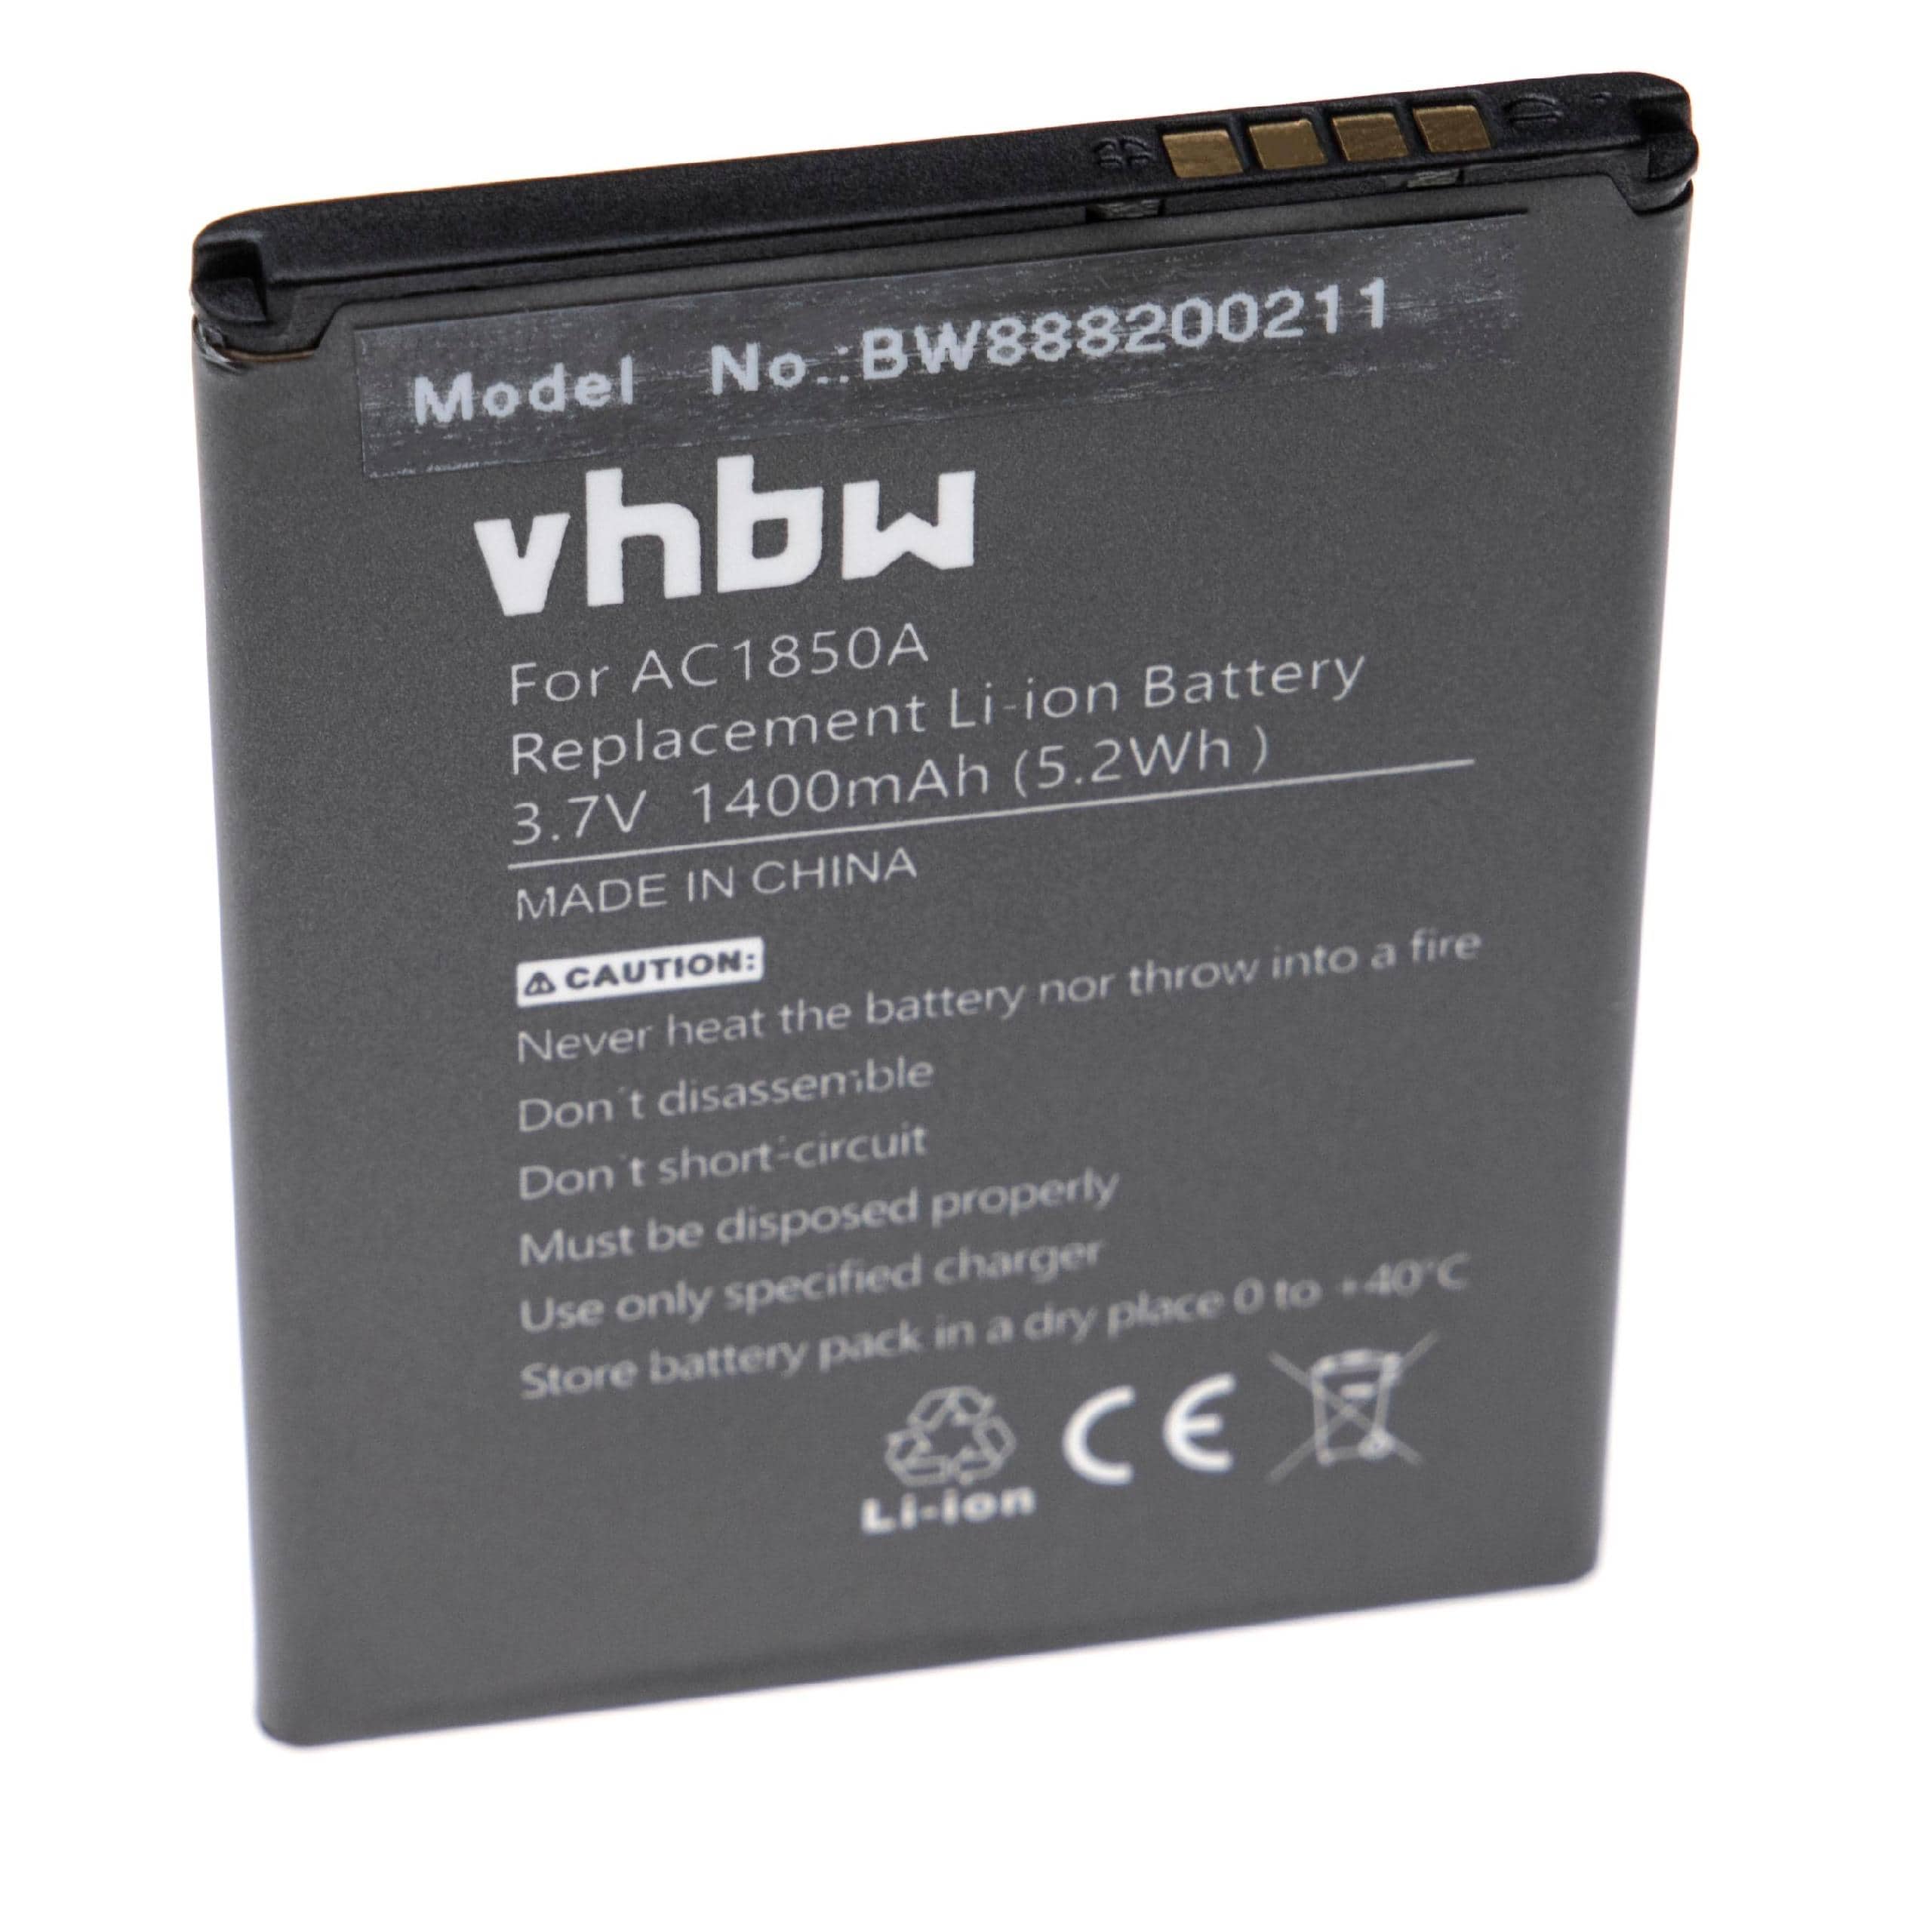 Akumulator bateria do telefonu smartfona zam. Archos AC1850A, TBW5986, AC300CA - 1400mAh, 3,7V, Li-Ion